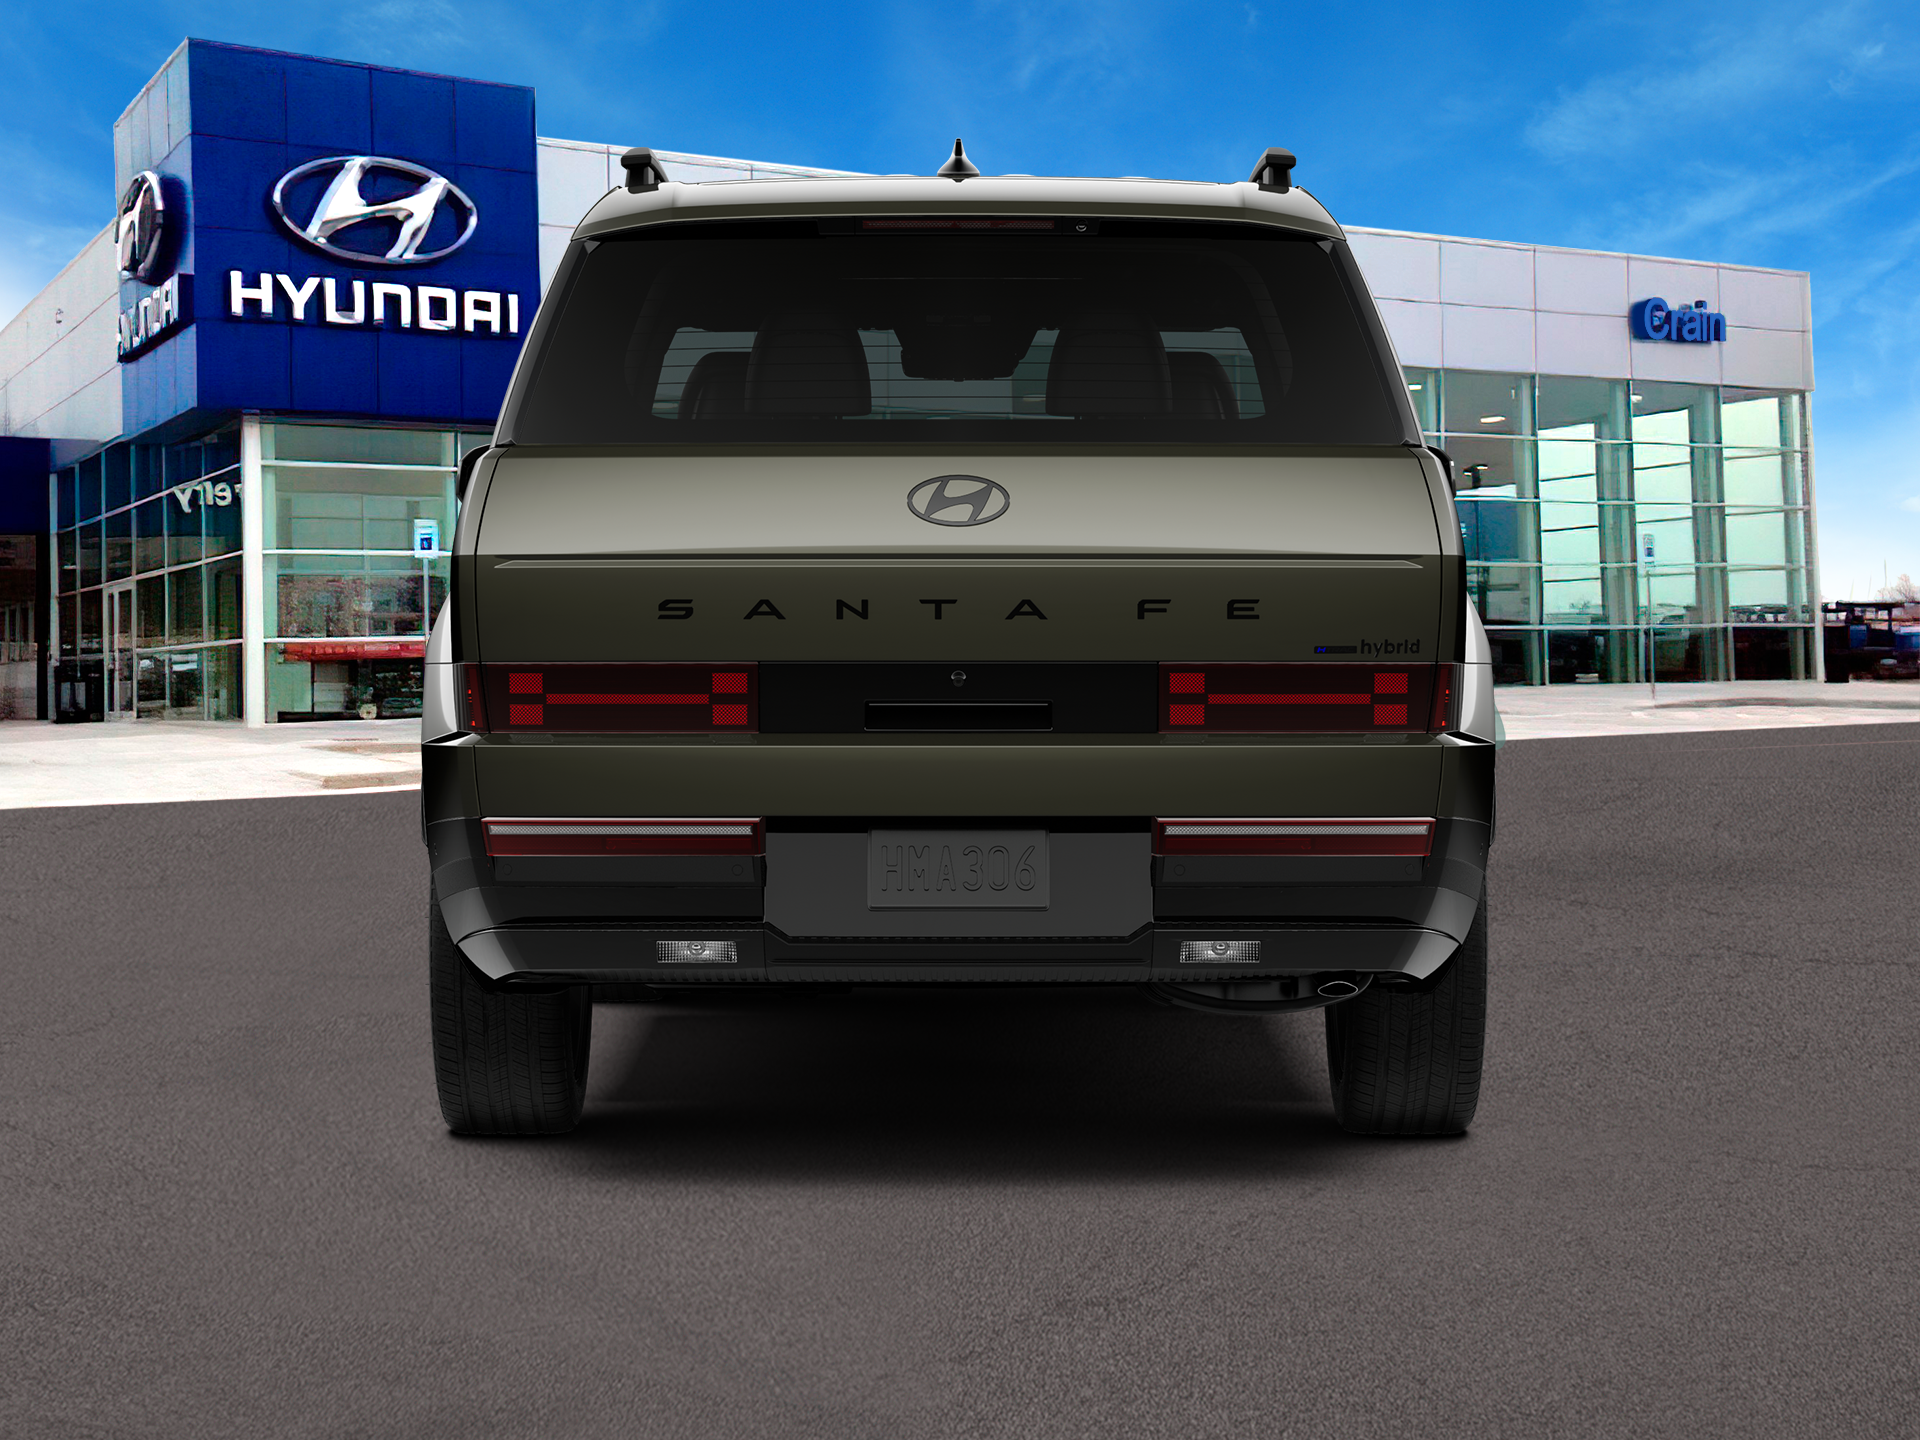 2024 Hyundai SANTA FE HYBRID Calligraphy